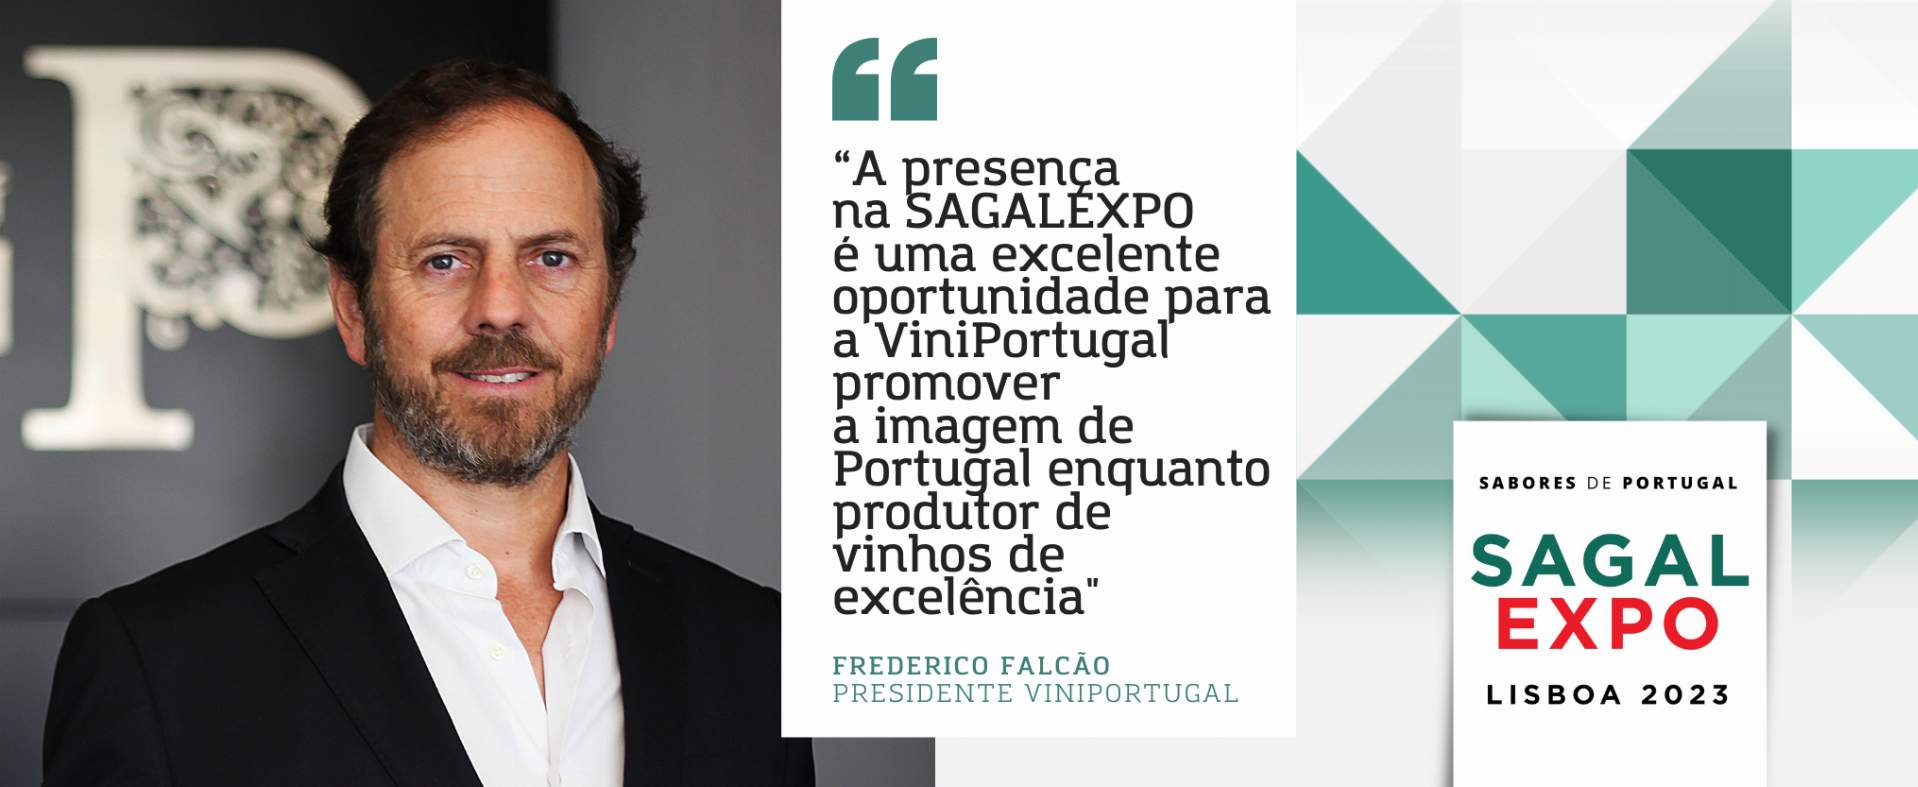 ViniPortugal: “A presença na SAGALEXPO é uma excelente oportunidade para promovermos a imagem de Portugal enquanto produtor de vinhos de excelência"